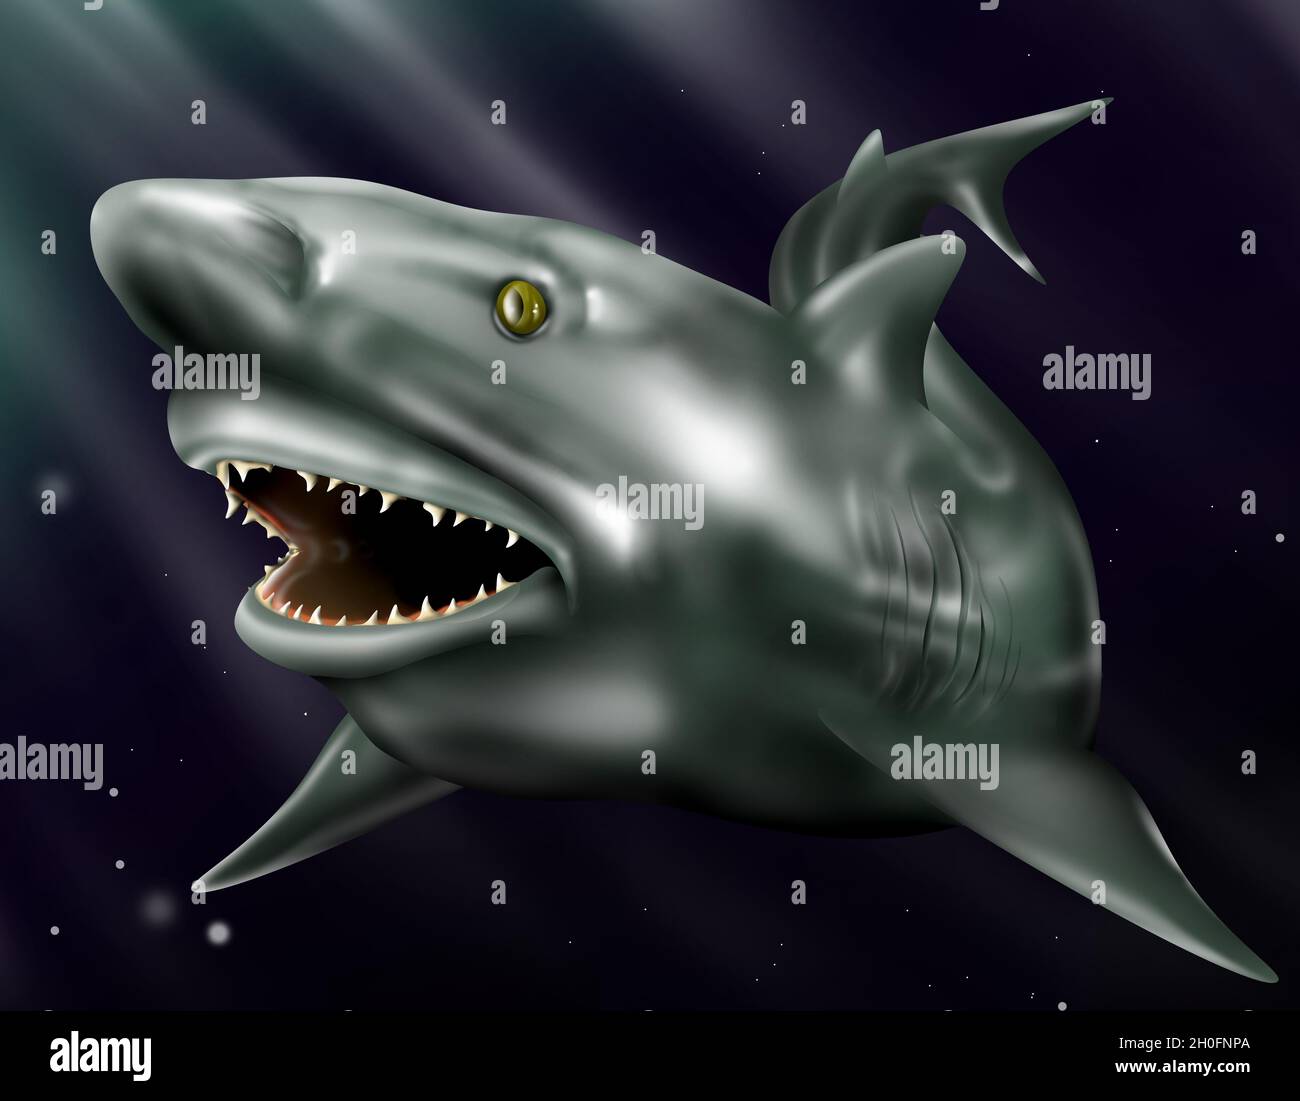 Boca de tiburón toro, Carcharhinus leulas o tiburón Zambezi' (informalmente 'zambi'), ilustración en el océano azul, tiburón más agresivo. Foto de stock